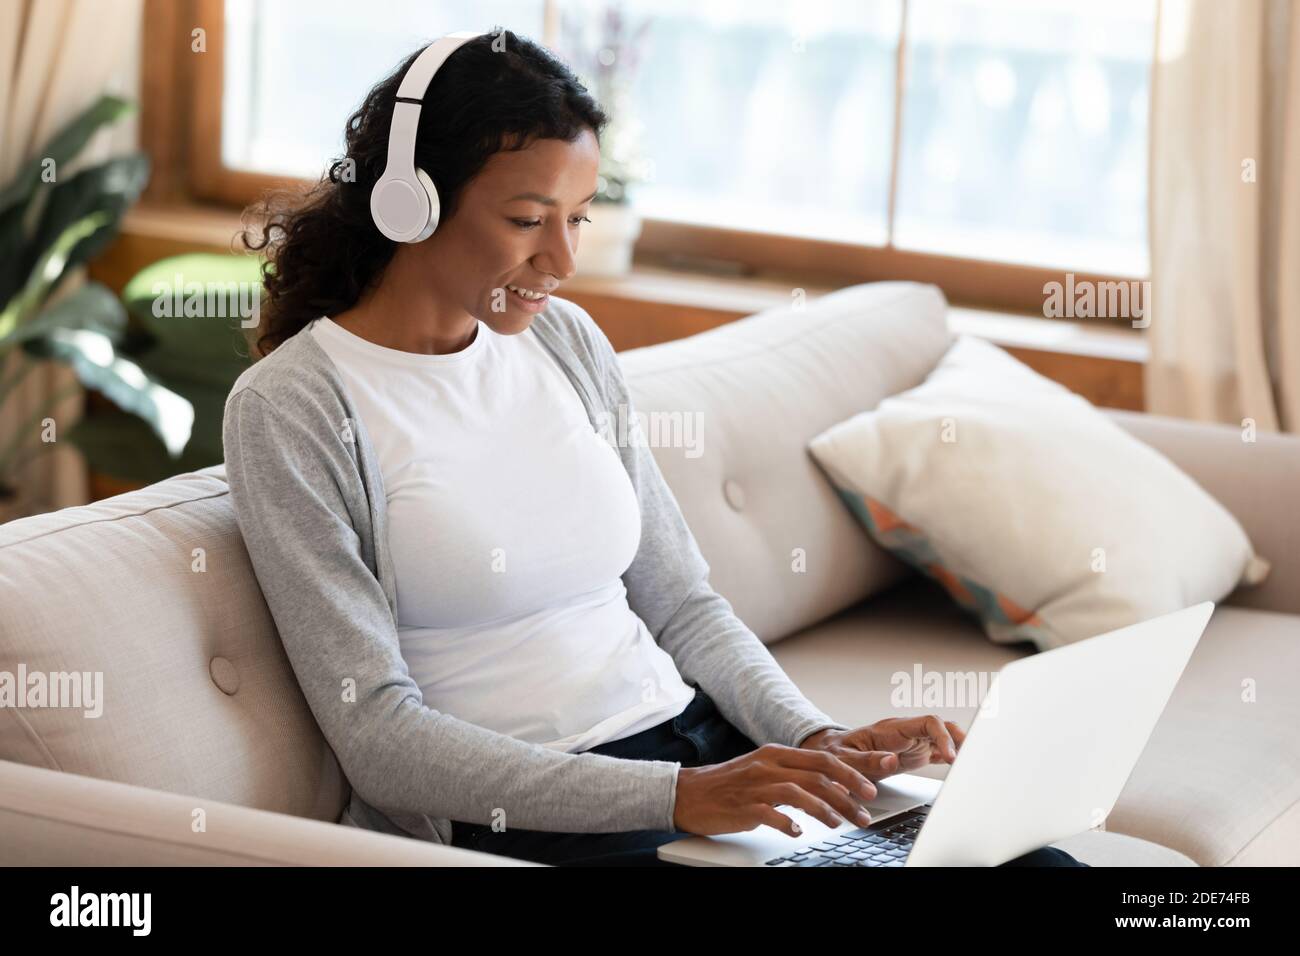 Une femme biraciale dans un casque travaille sur un ordinateur portable Banque D'Images